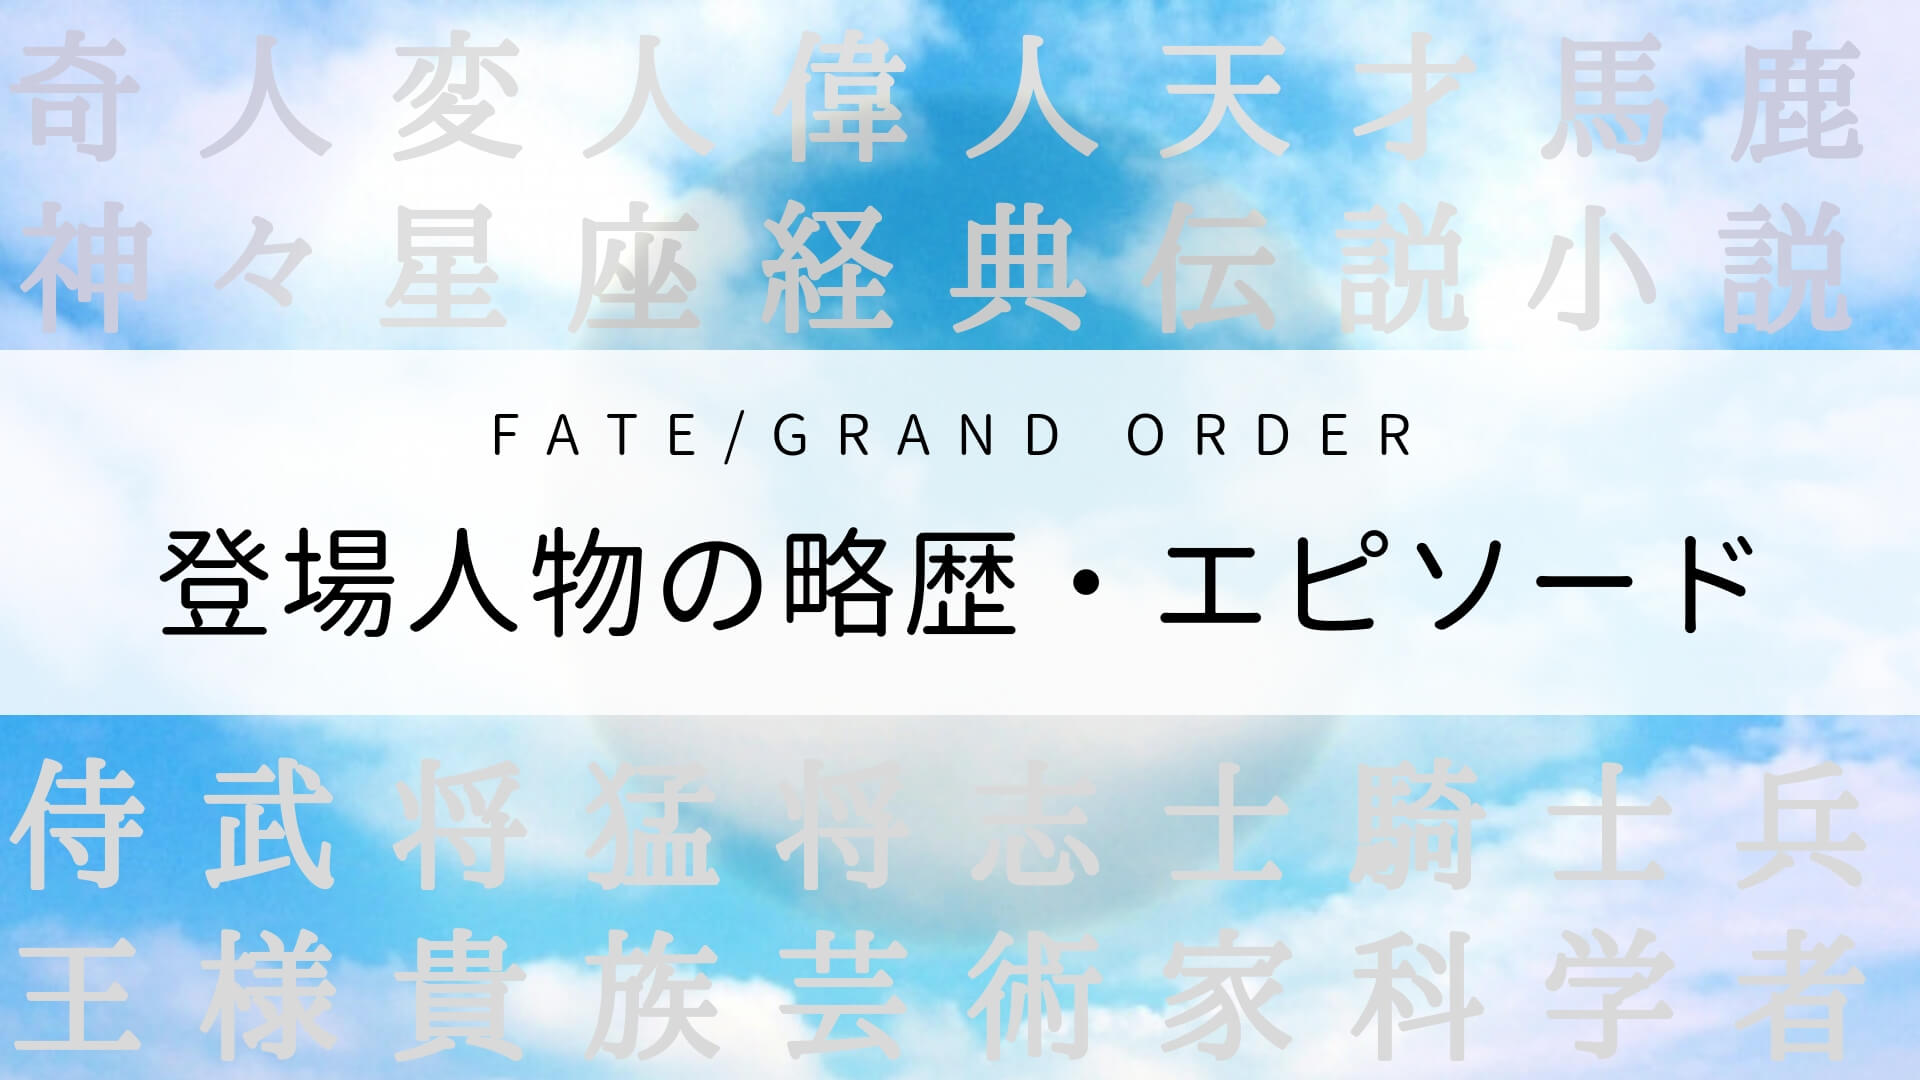 Fate Grandorder登場キャラクターの略歴 エピソード 語る あれこれ